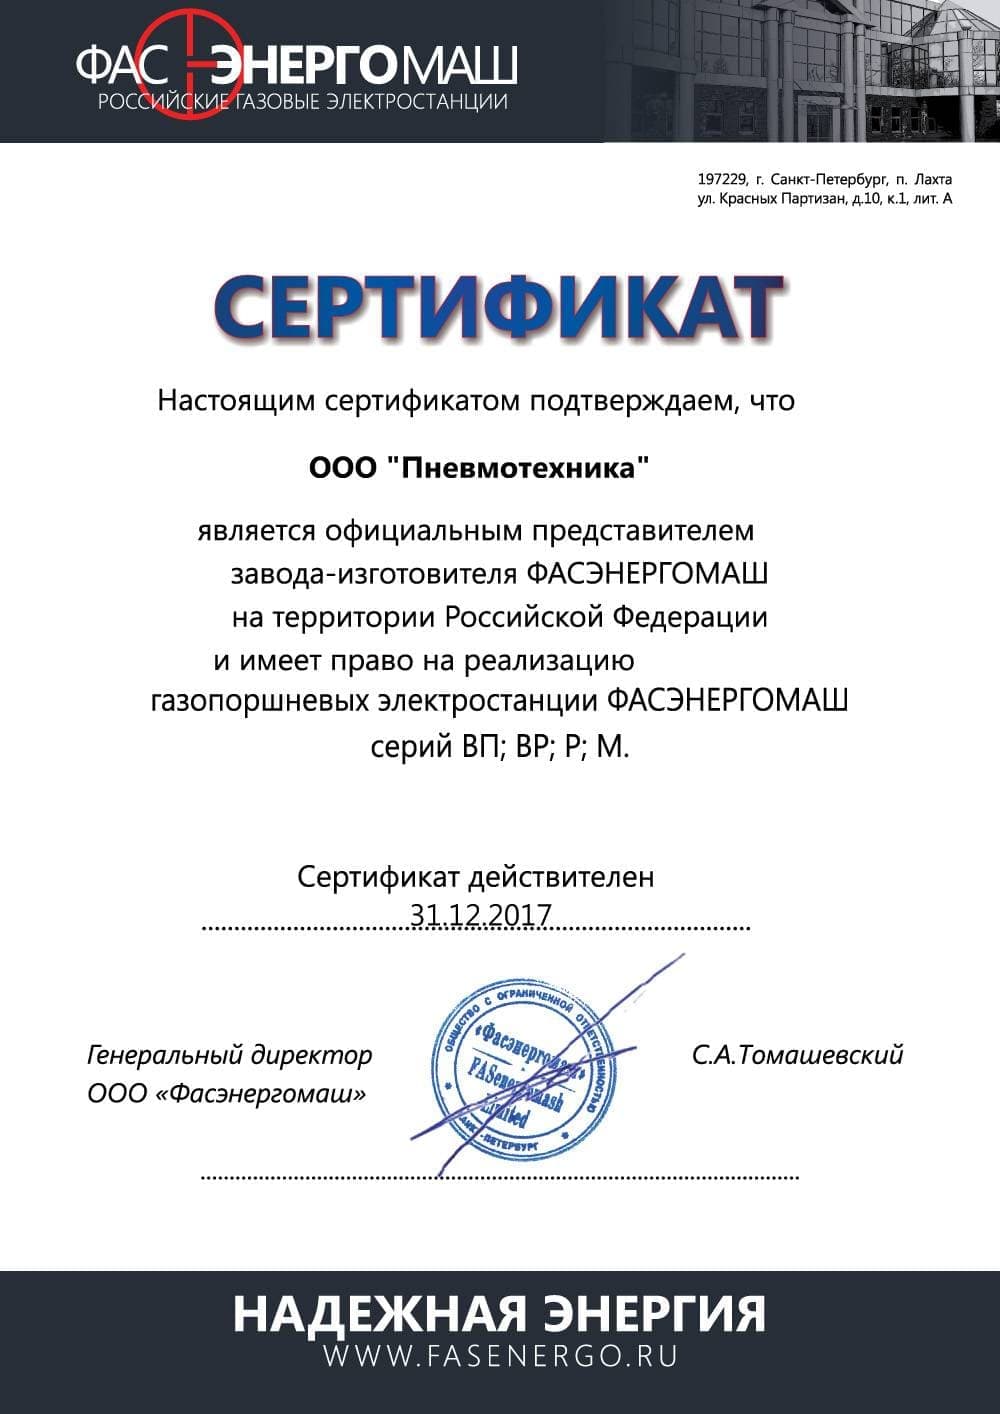 Сертификат, подтверждающий, что ООО «Пневмотехника» является официальным представителем завода-изготовителя «Фасэнергомаш» на территории Российской Федерации.